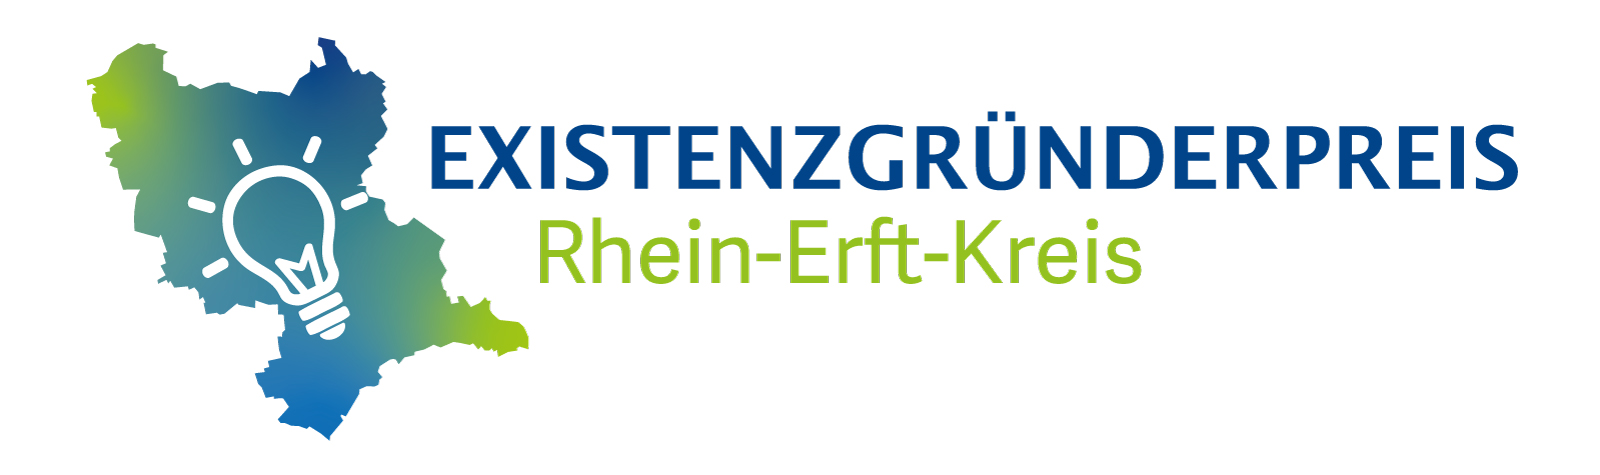 Existenzgründerpreis Rhein-Erft-Kreis 2020